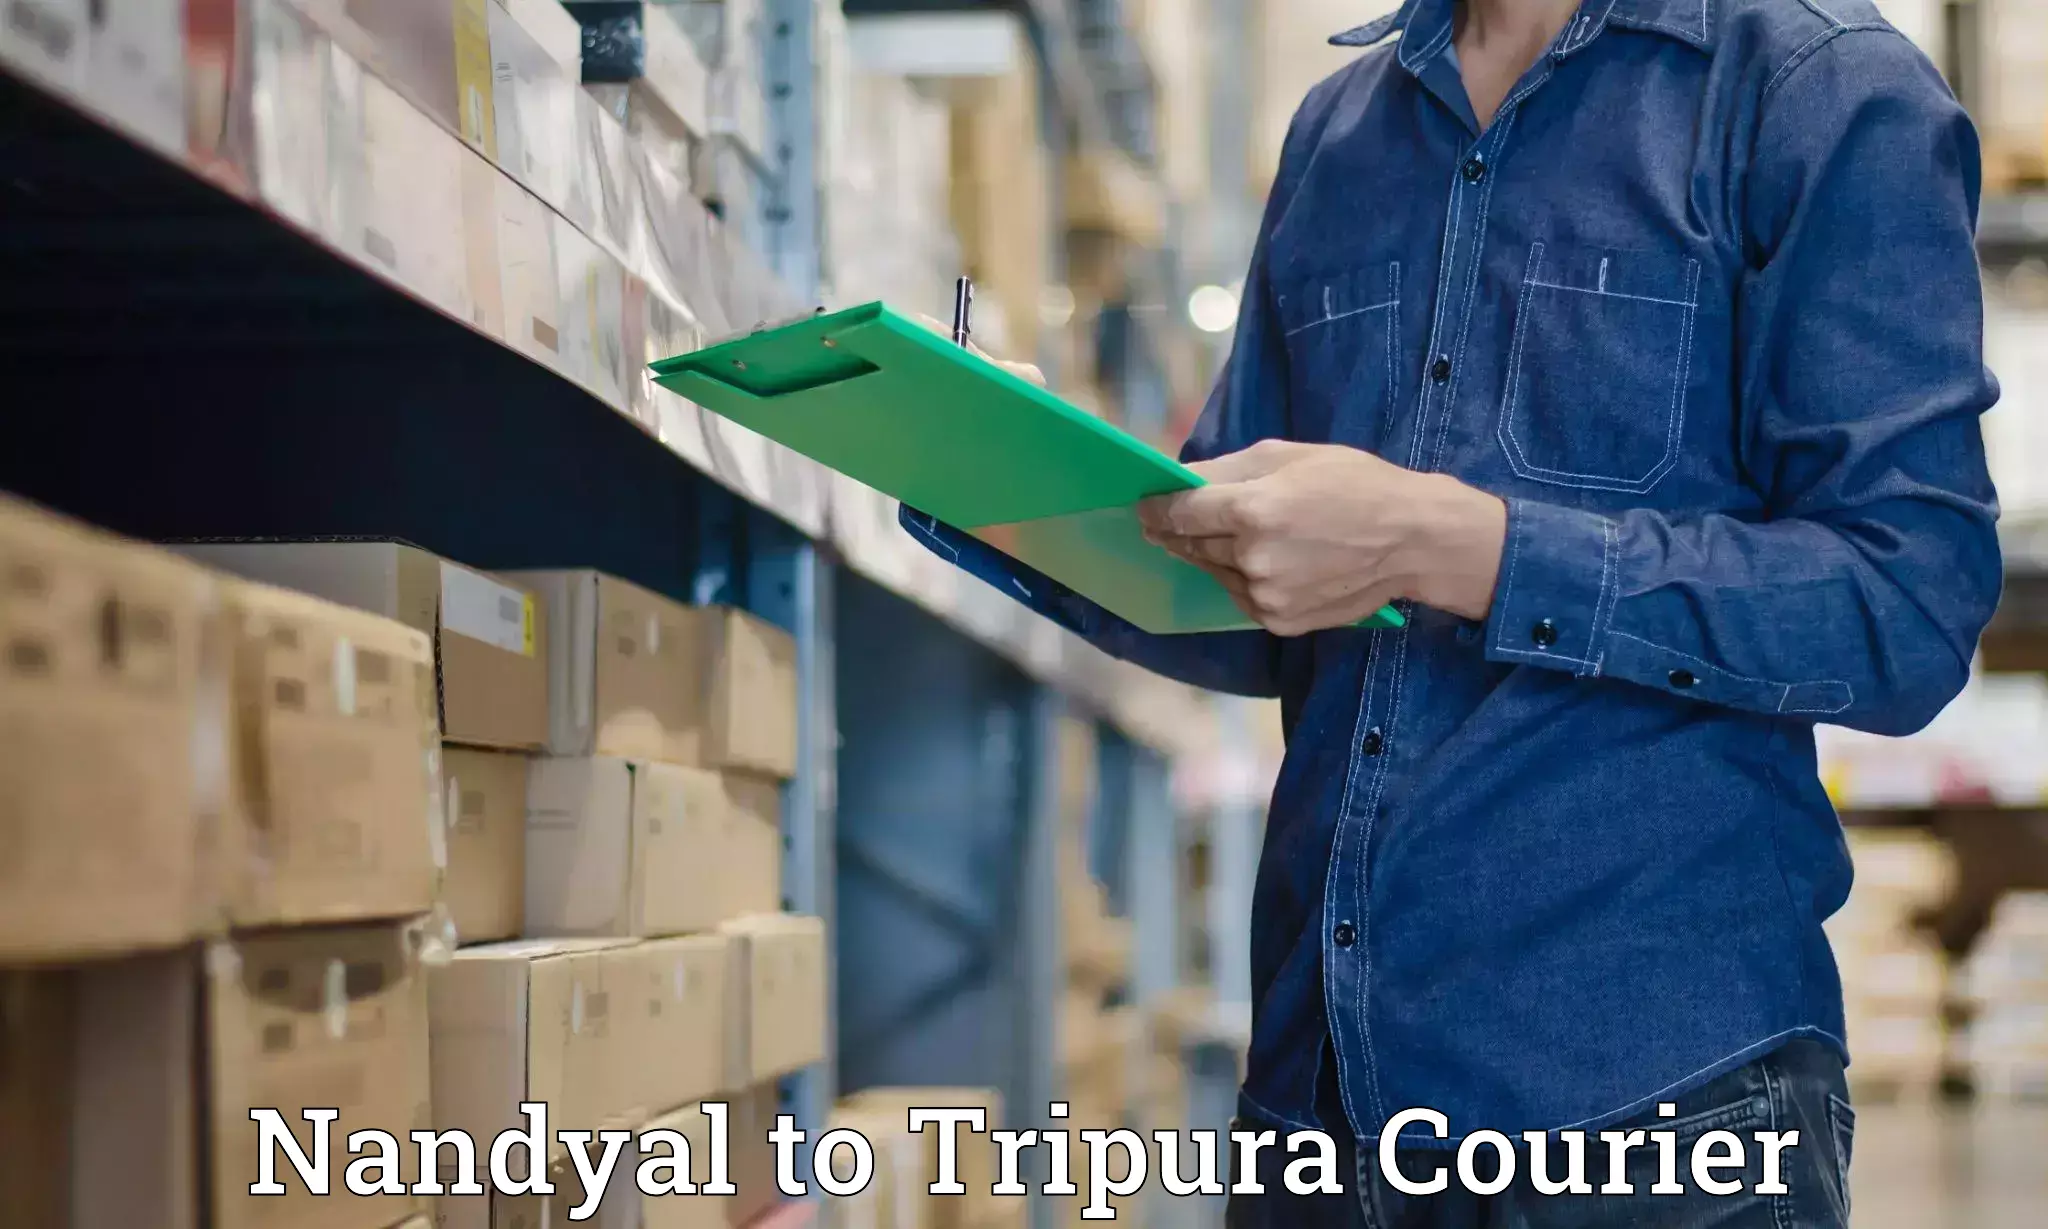 Global parcel delivery Nandyal to Udaipur Tripura